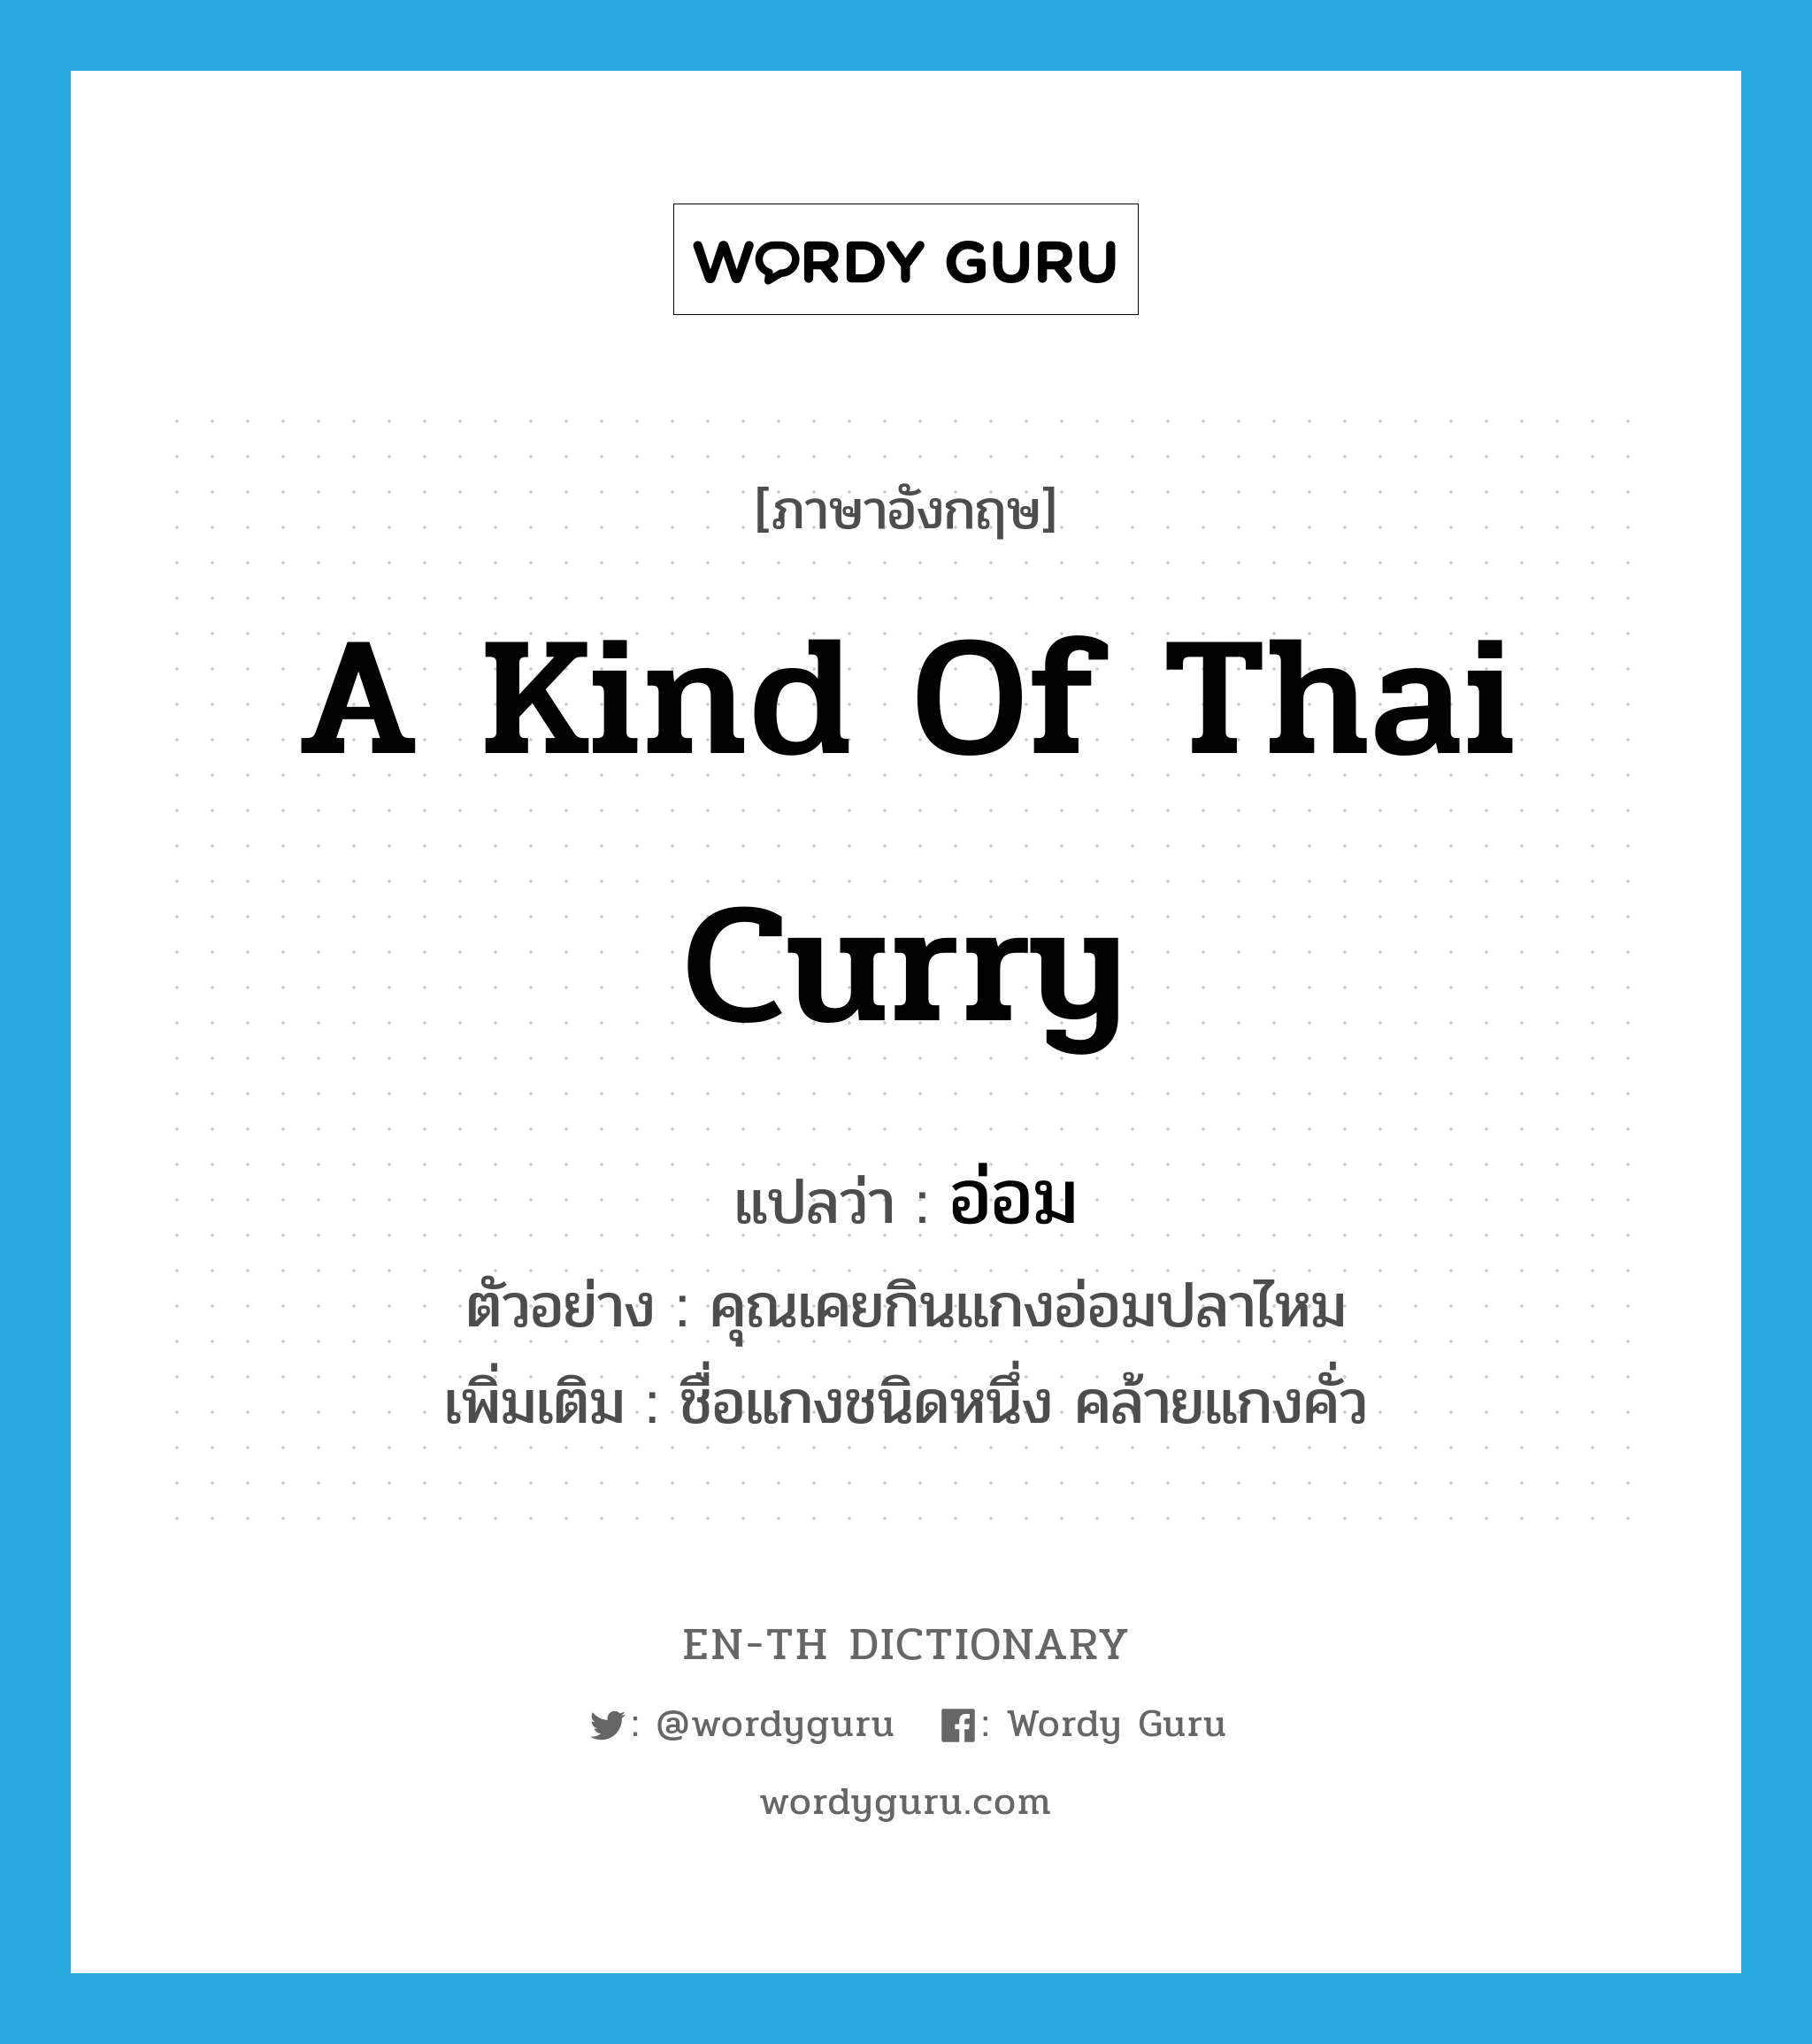 อ่อม ภาษาอังกฤษ?, คำศัพท์ภาษาอังกฤษ อ่อม แปลว่า a kind of Thai curry ประเภท N ตัวอย่าง คุณเคยกินแกงอ่อมปลาไหม เพิ่มเติม ชื่อแกงชนิดหนึ่ง คล้ายแกงคั่ว หมวด N